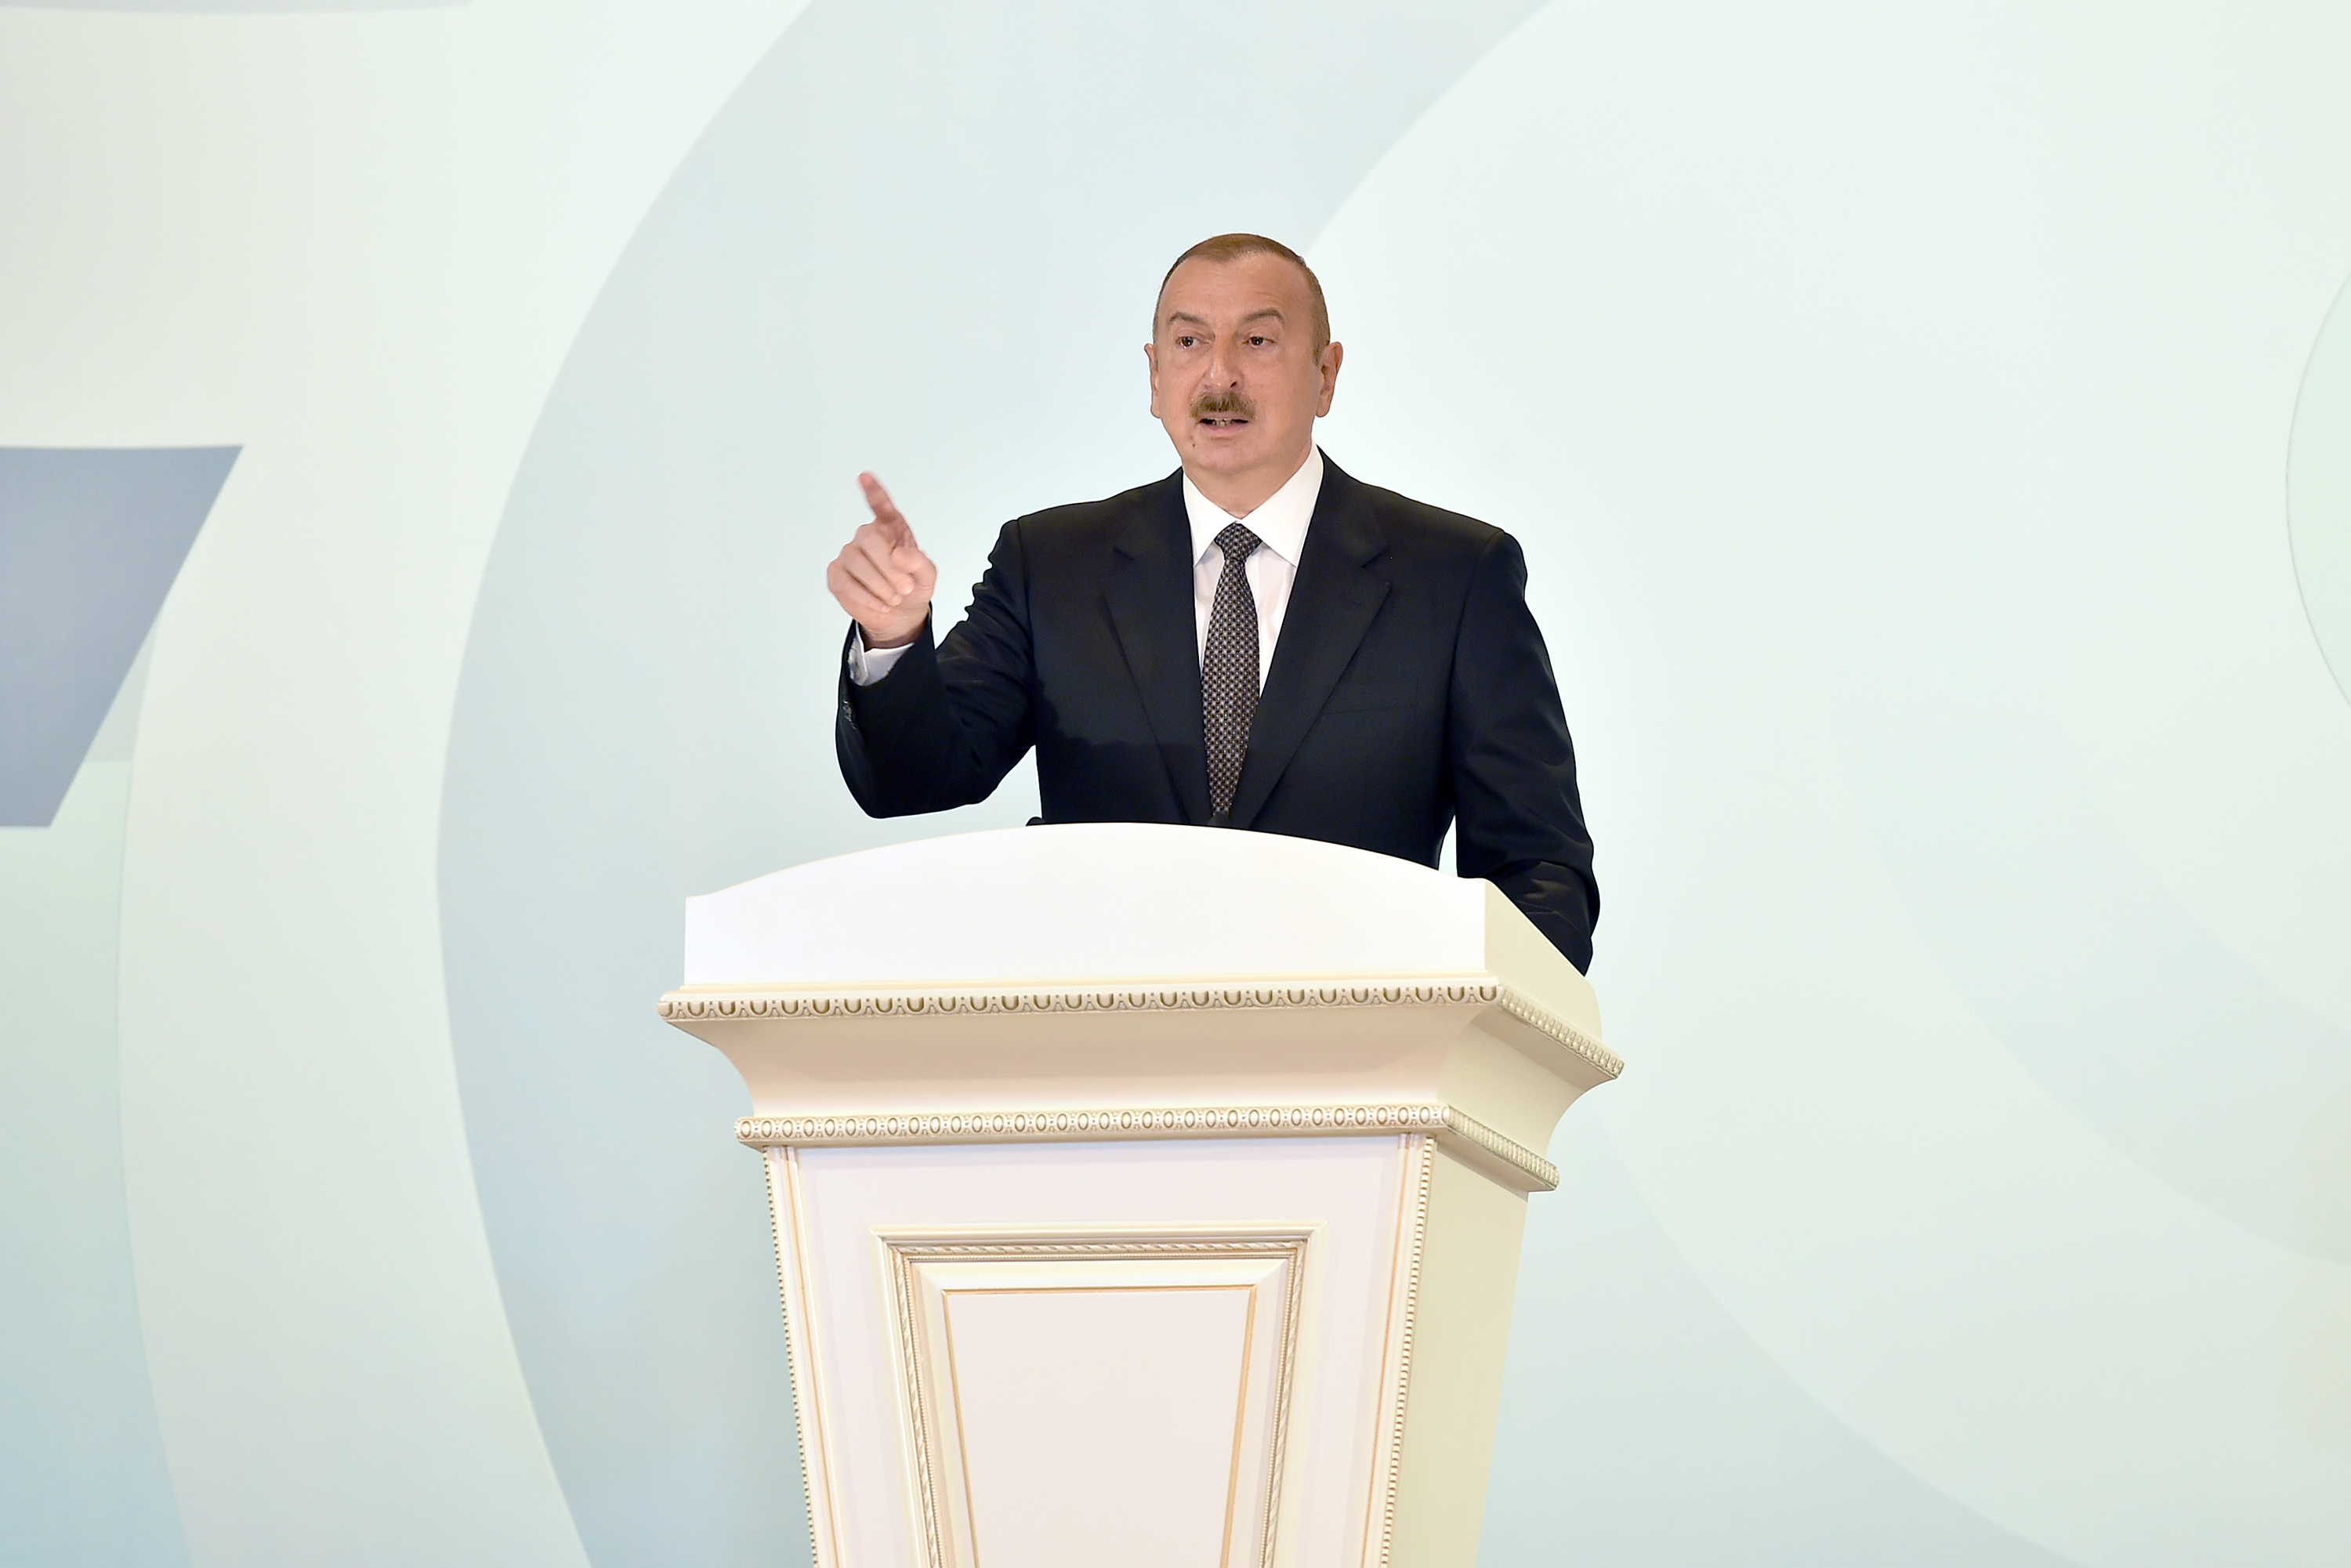 Prezident: “Azərbaycan bundan sonra da Avropanın enerji təhlükəsizliyində vacib rol oynayacaq”